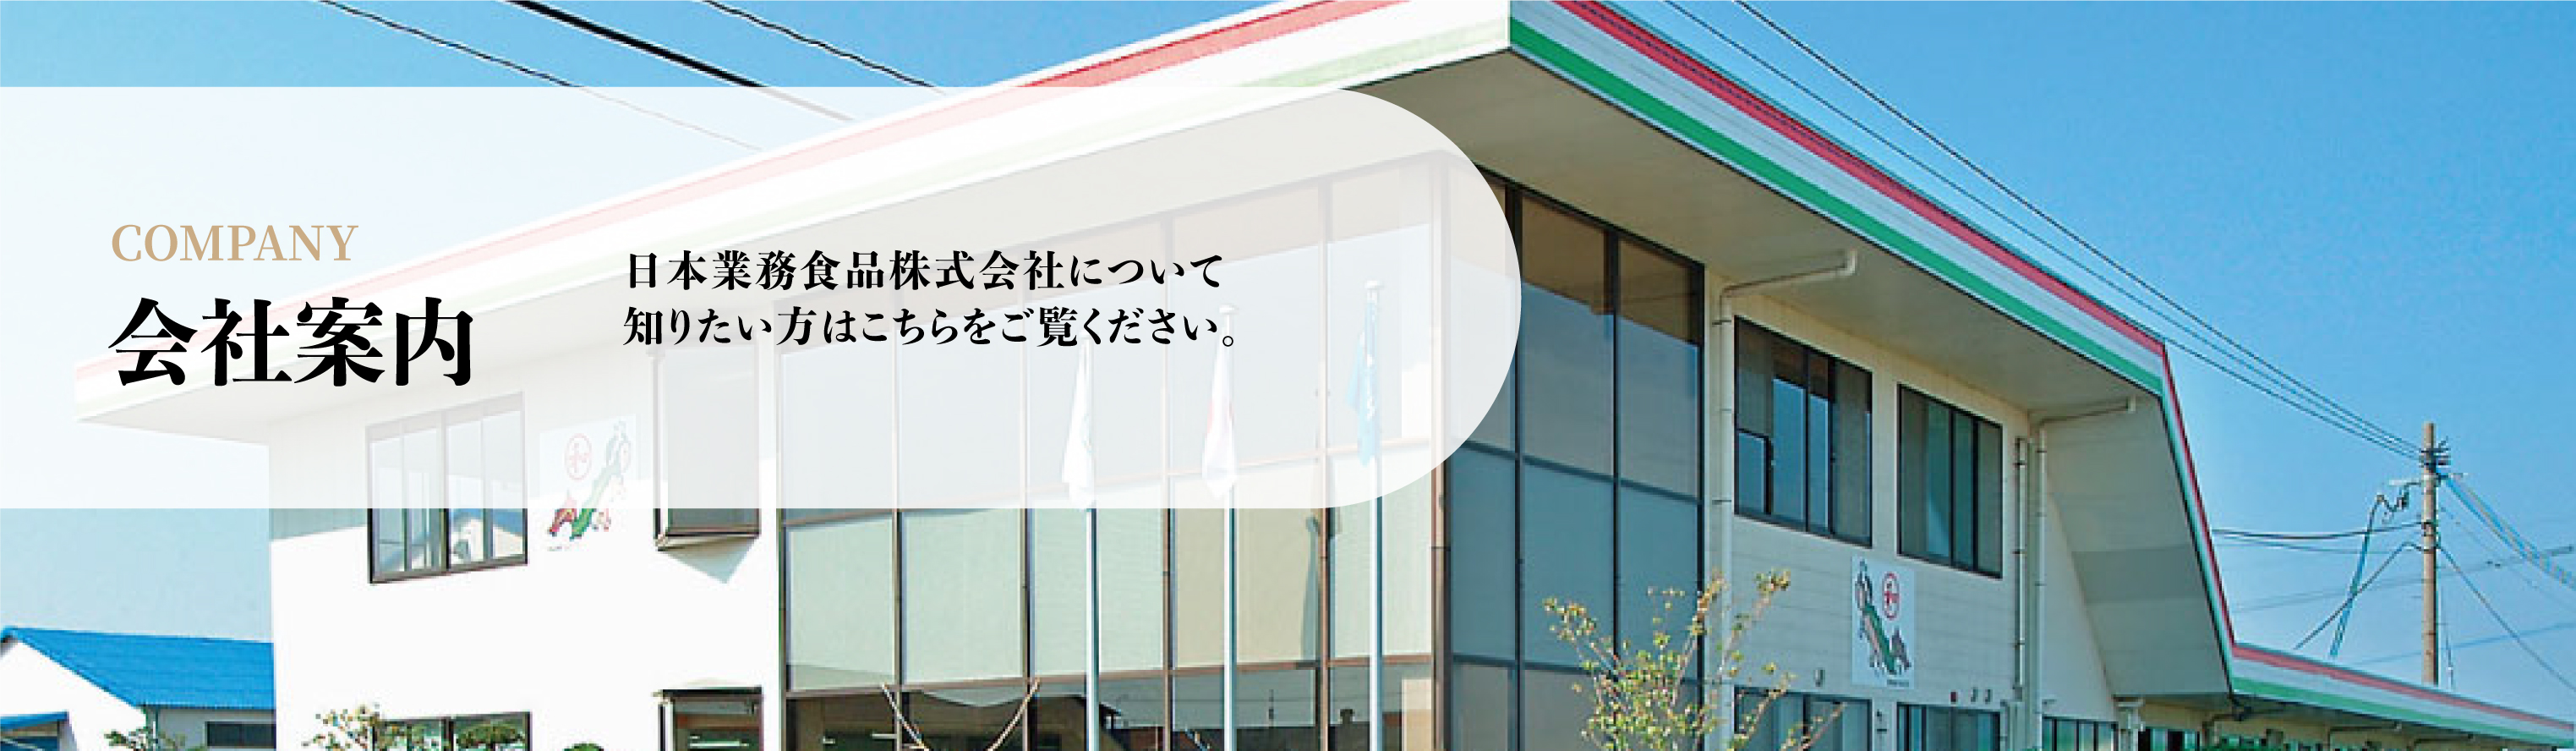 日本業務食品株式会社について
知りたい方はこちらをご覧ください。